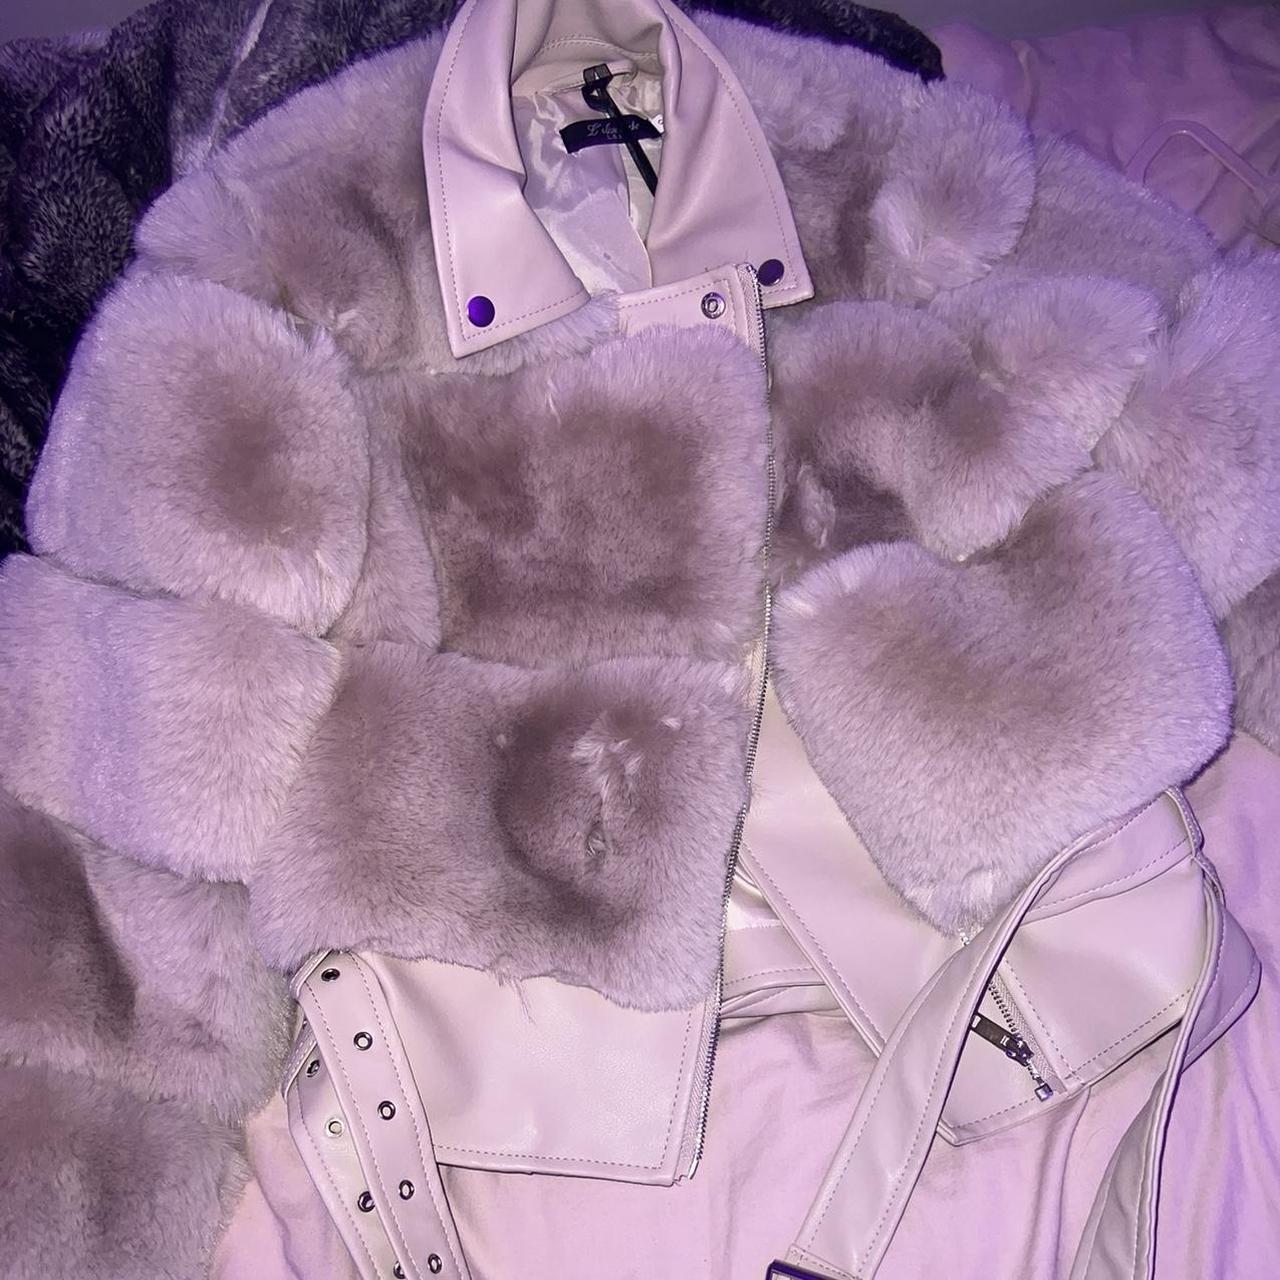 Cream fur belted jacket Stunning jacket ordered... - Depop